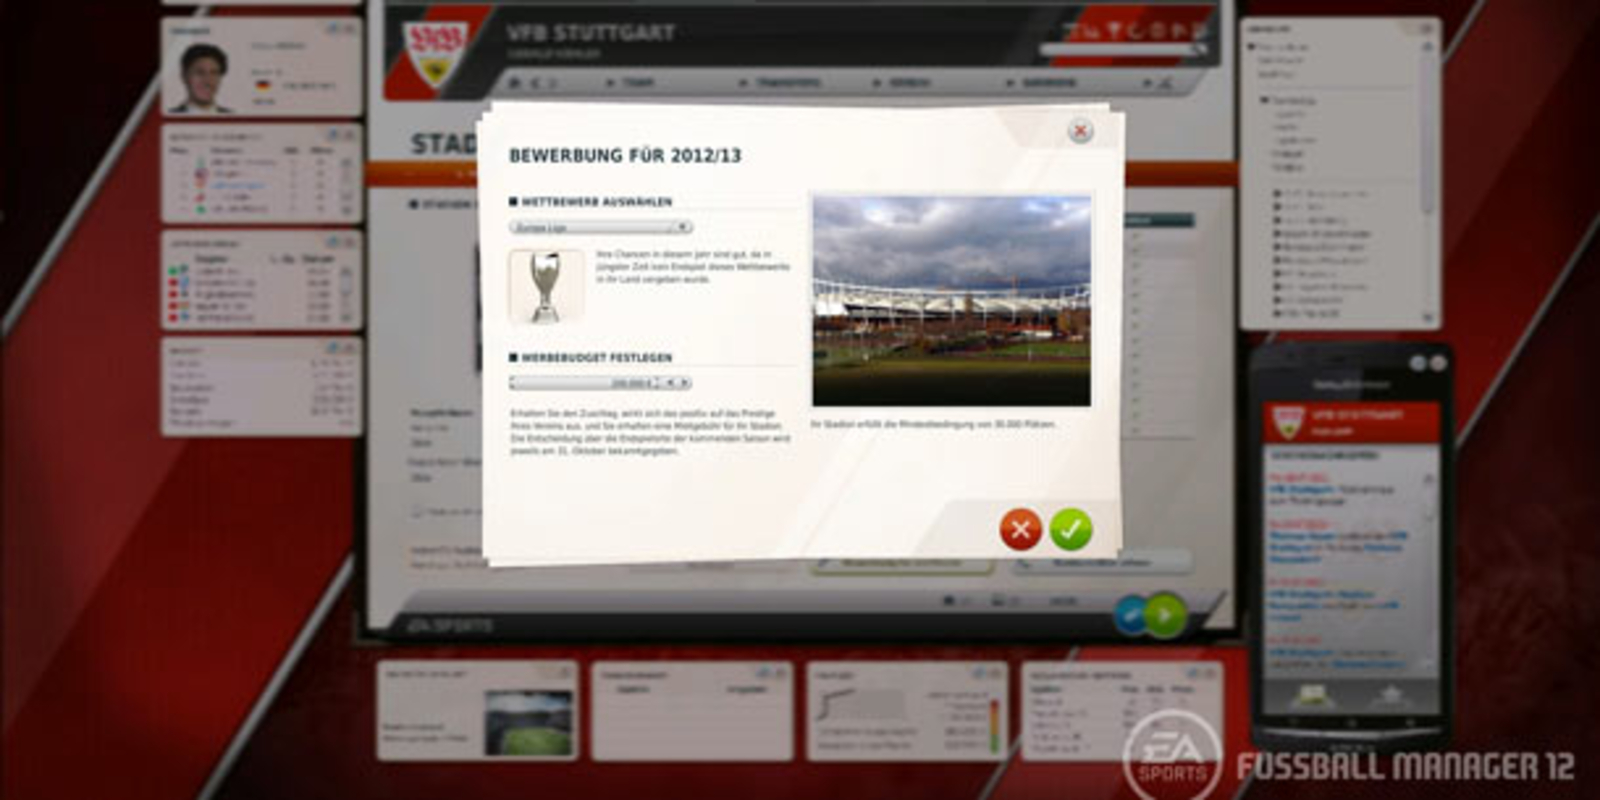 Fussball Manager 12 Demo verfügbar